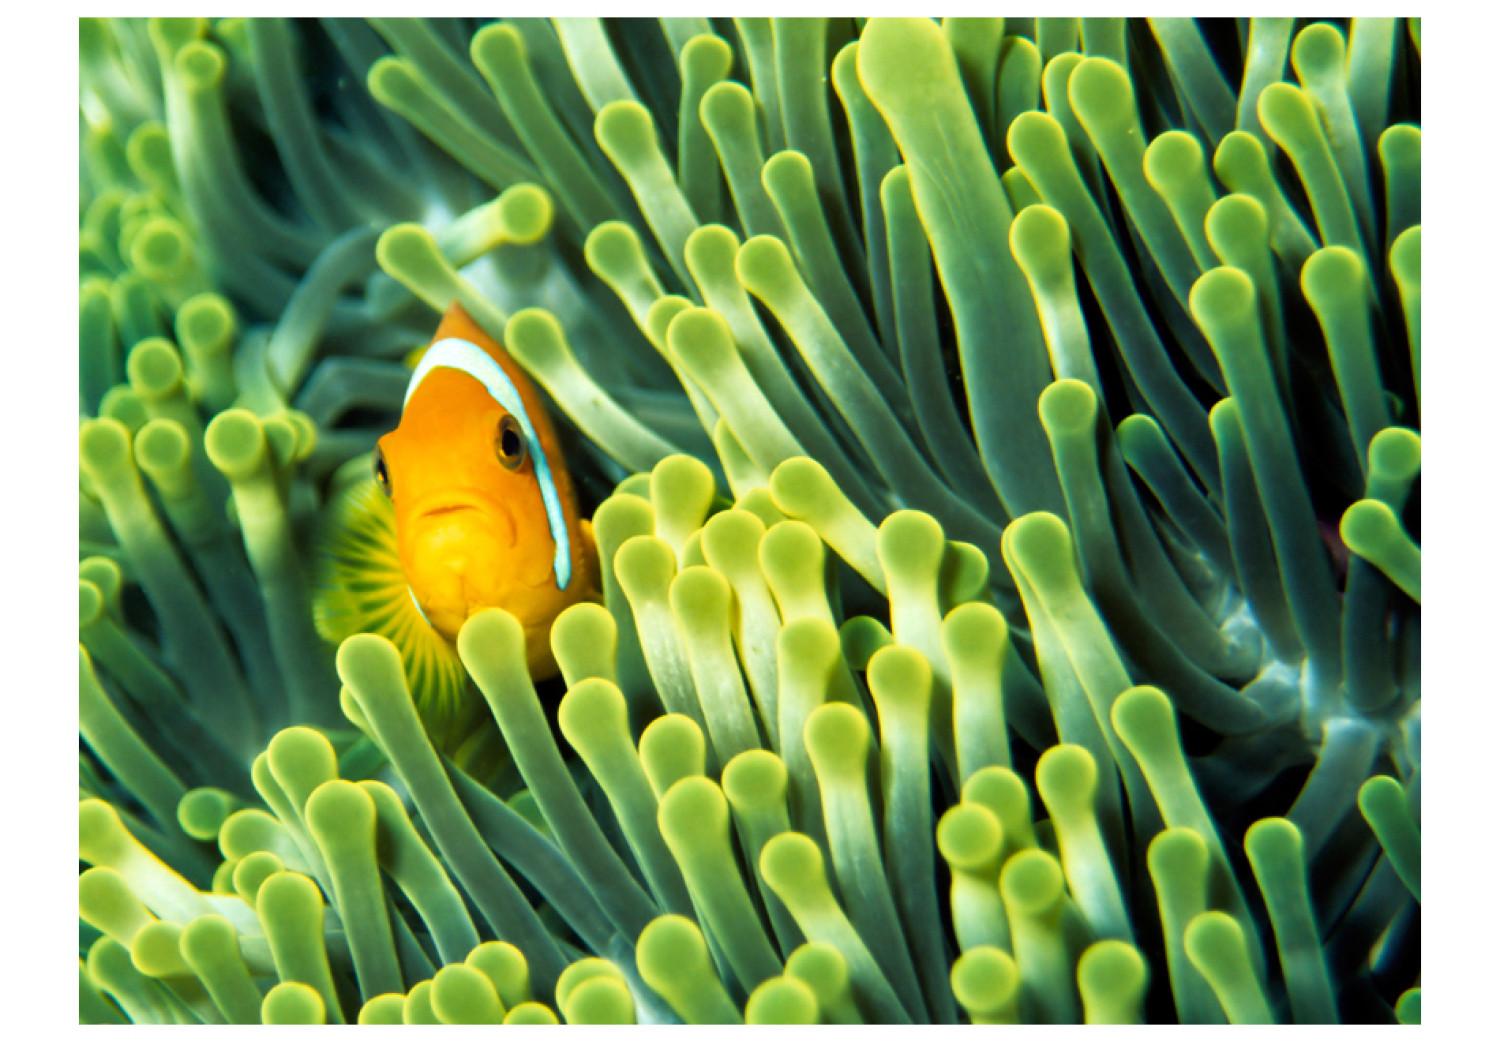 Fotomural a medida Naturaleza marina - pez payaso entre arrecife coralino verde